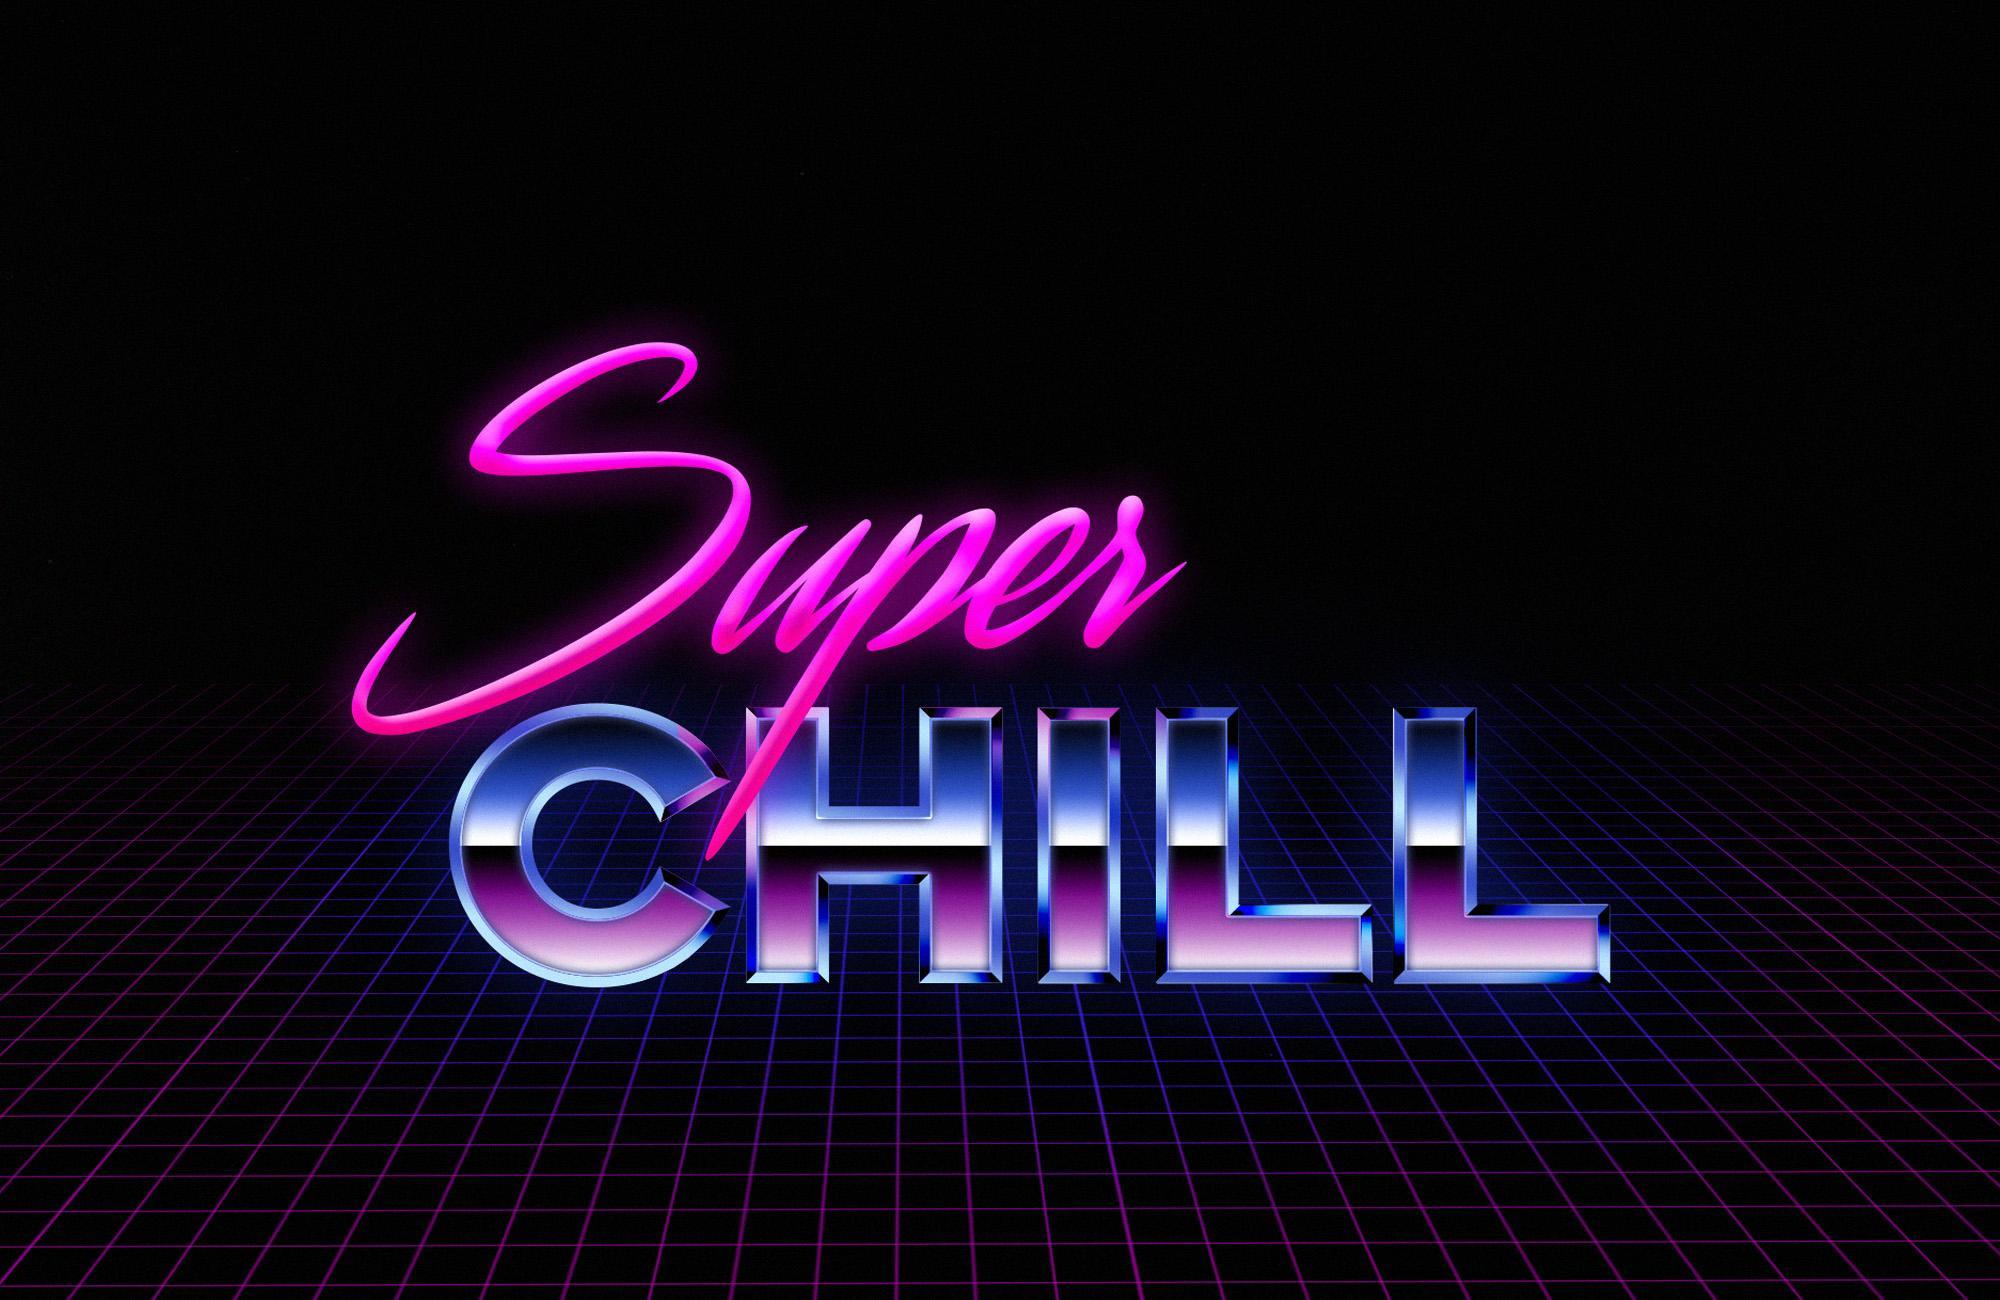 Super Chill Logo - Super Chill : Yogscast